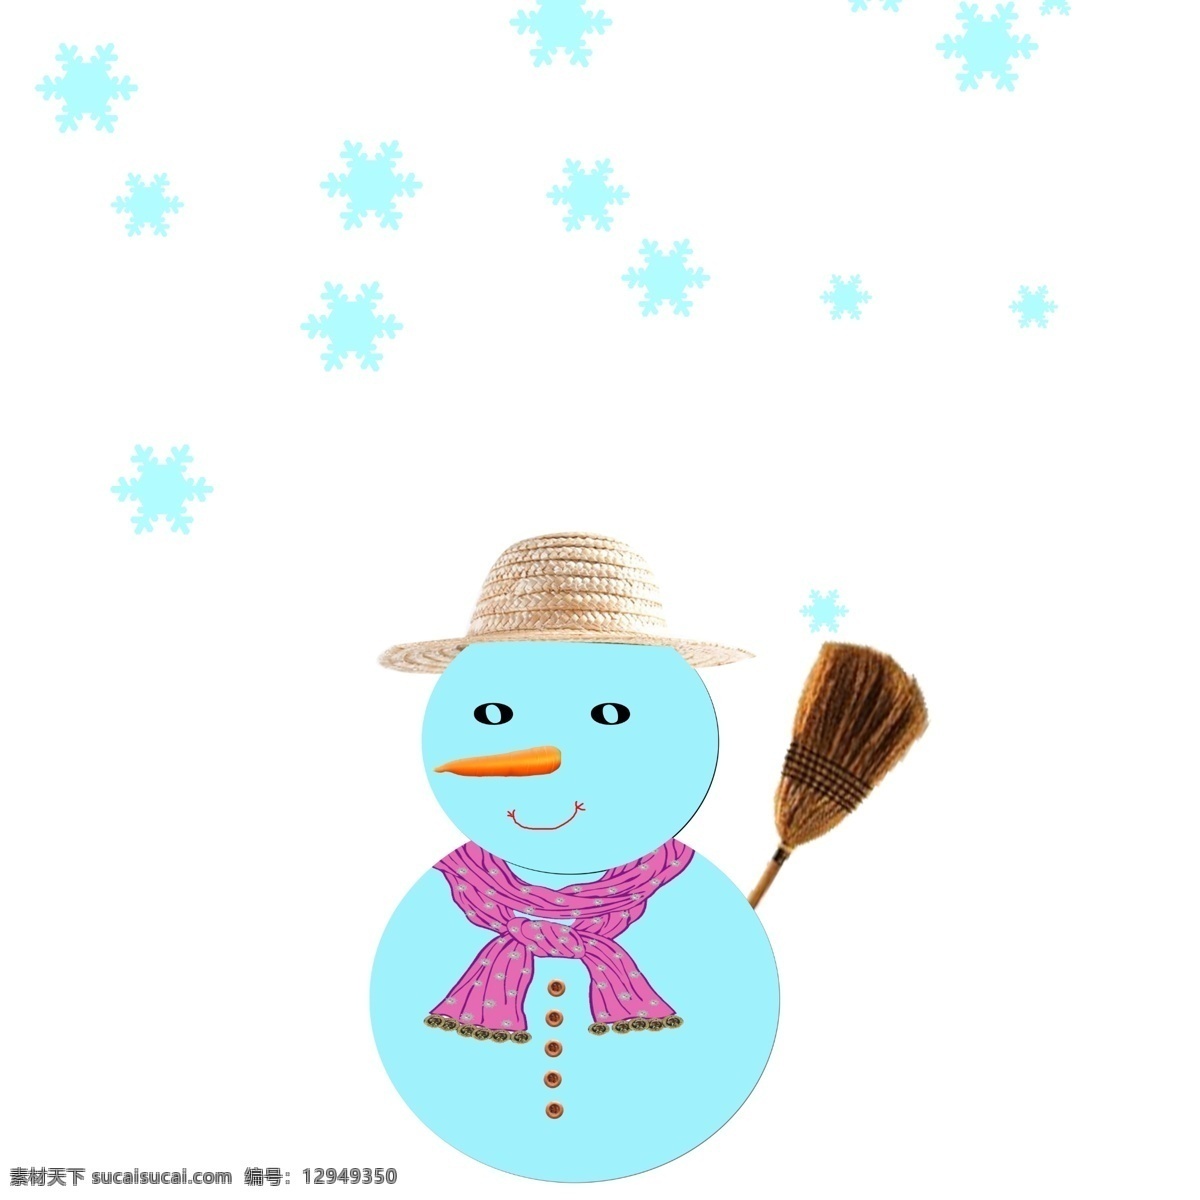 下雪天堆雪人 下雪 雪人 堆雪人 围巾 扫帚 萝卜鼻子 草帽 白色